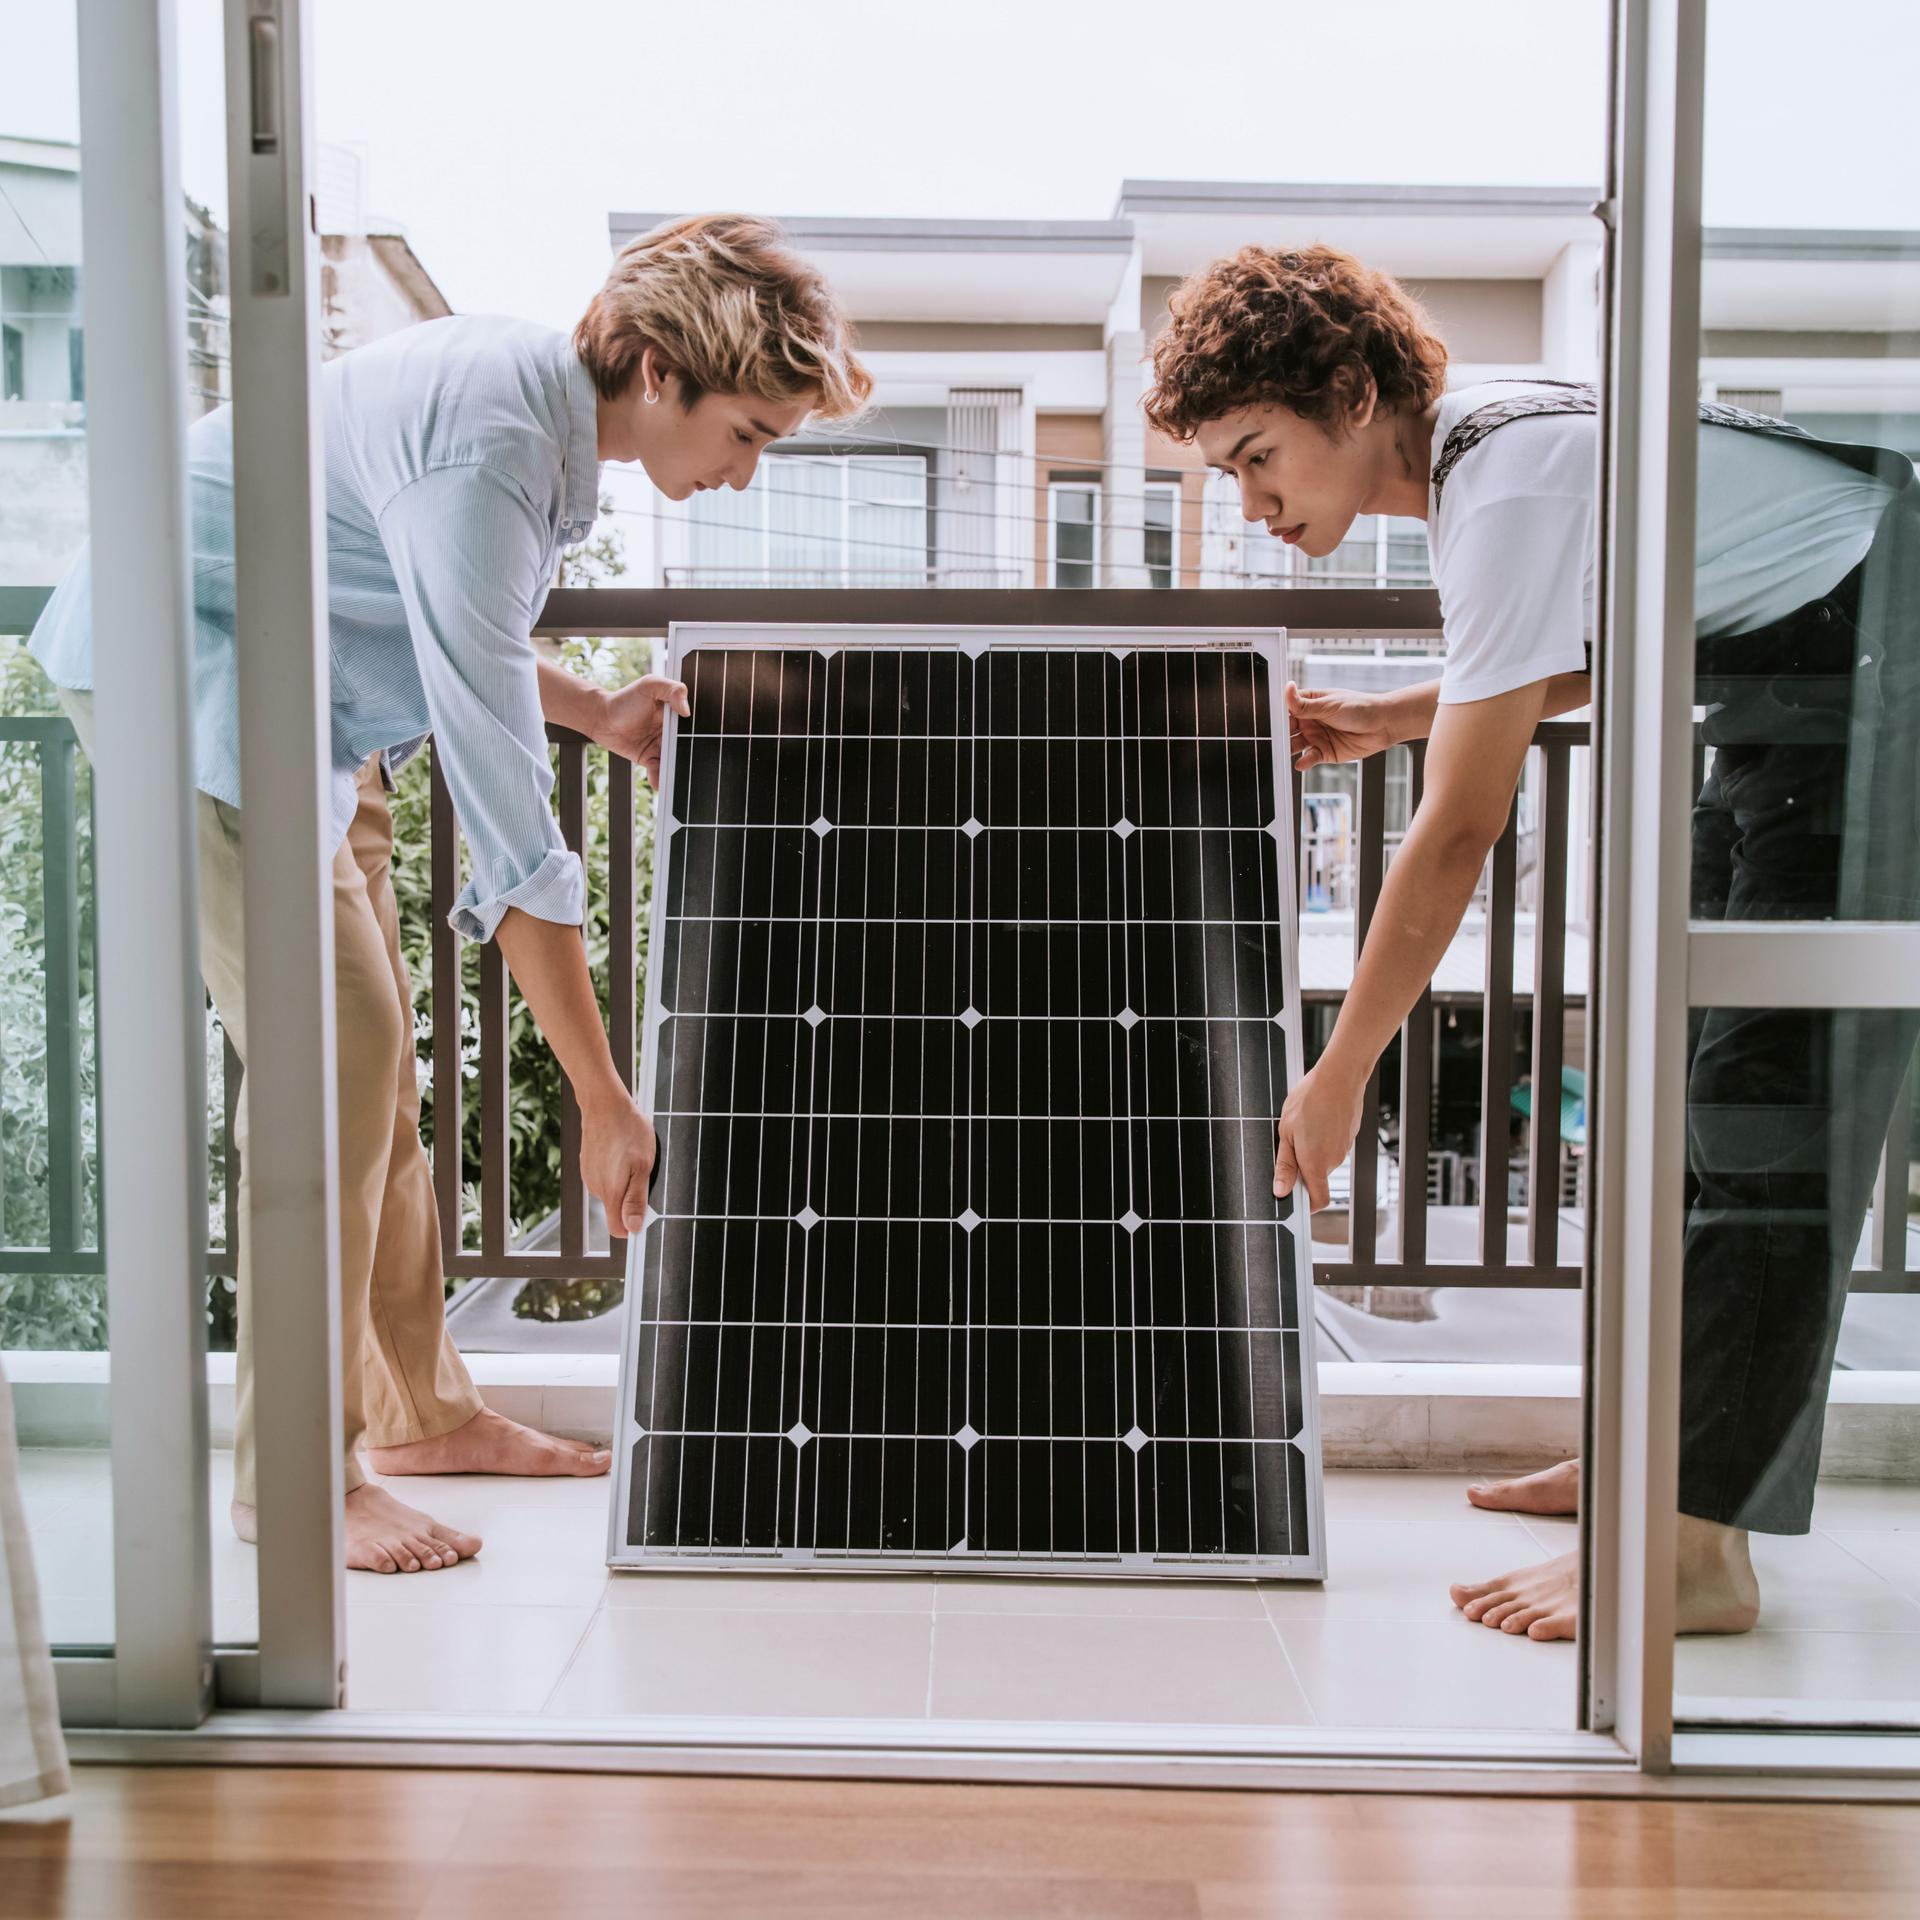 Zwei Personen stehen mit einem Solarpanel in den Händen auf dem Balkon eines Hauses.